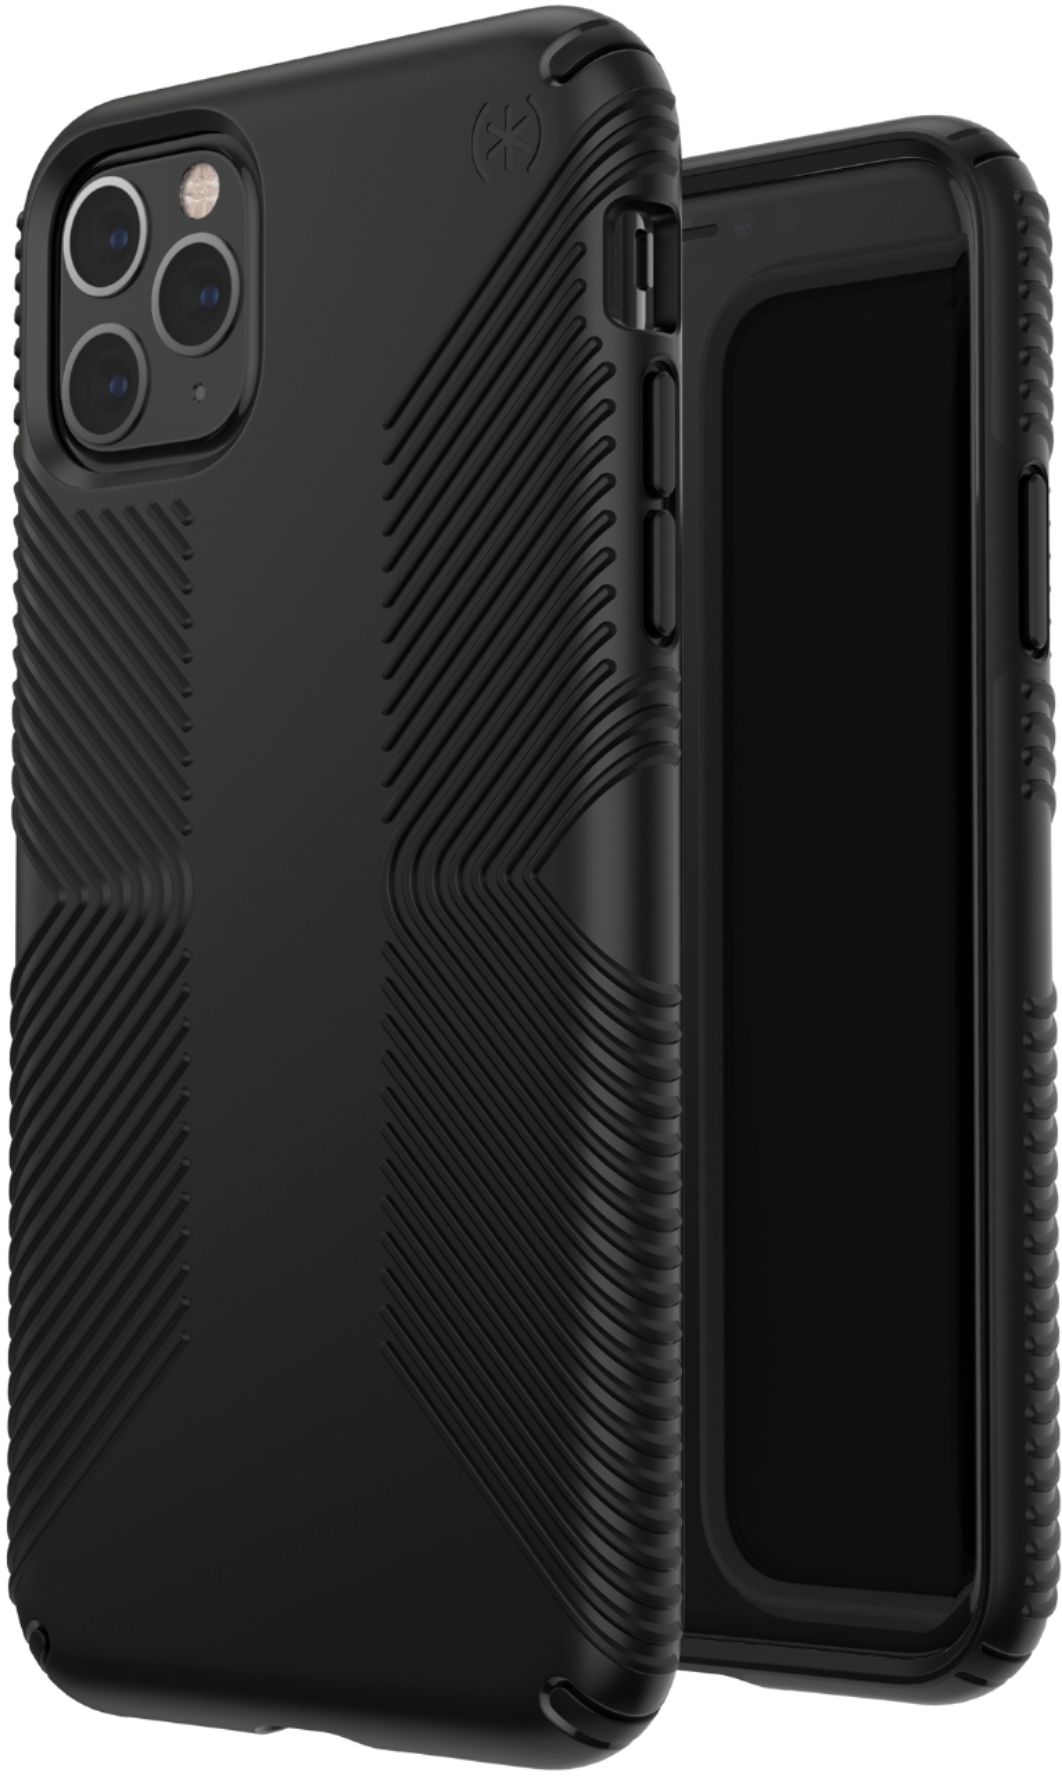 スマホアクセサリー iPhone用ケース Best Buy: Speck Presidio Grip Case for Apple® iPhone® 11 Pro Max 